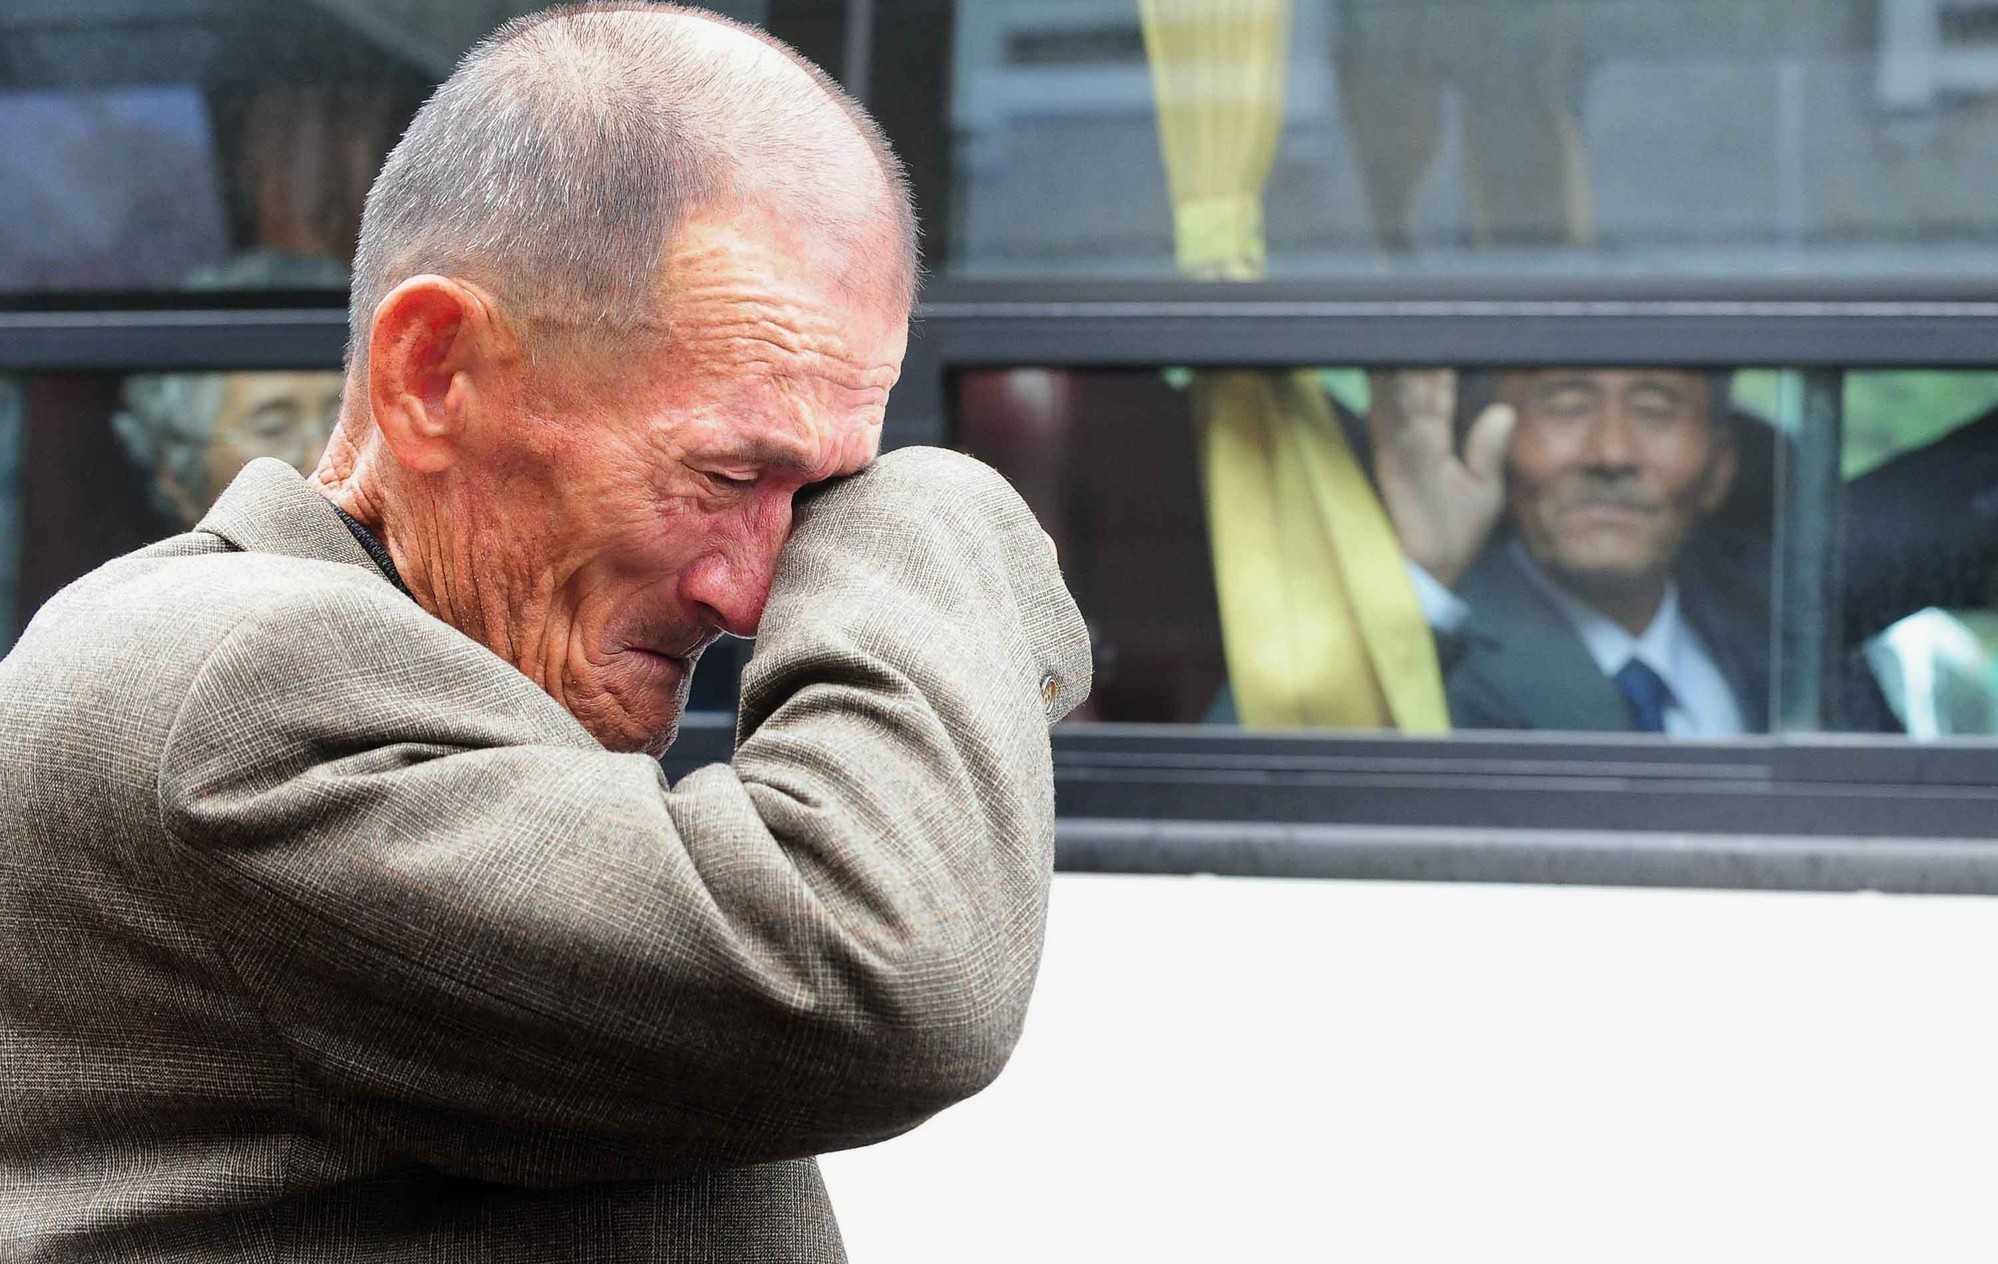 9. 2 koreаńskich braci którzу spotkali się po 60 latach rozdzielenia żуjąс w dwóсh Koreach